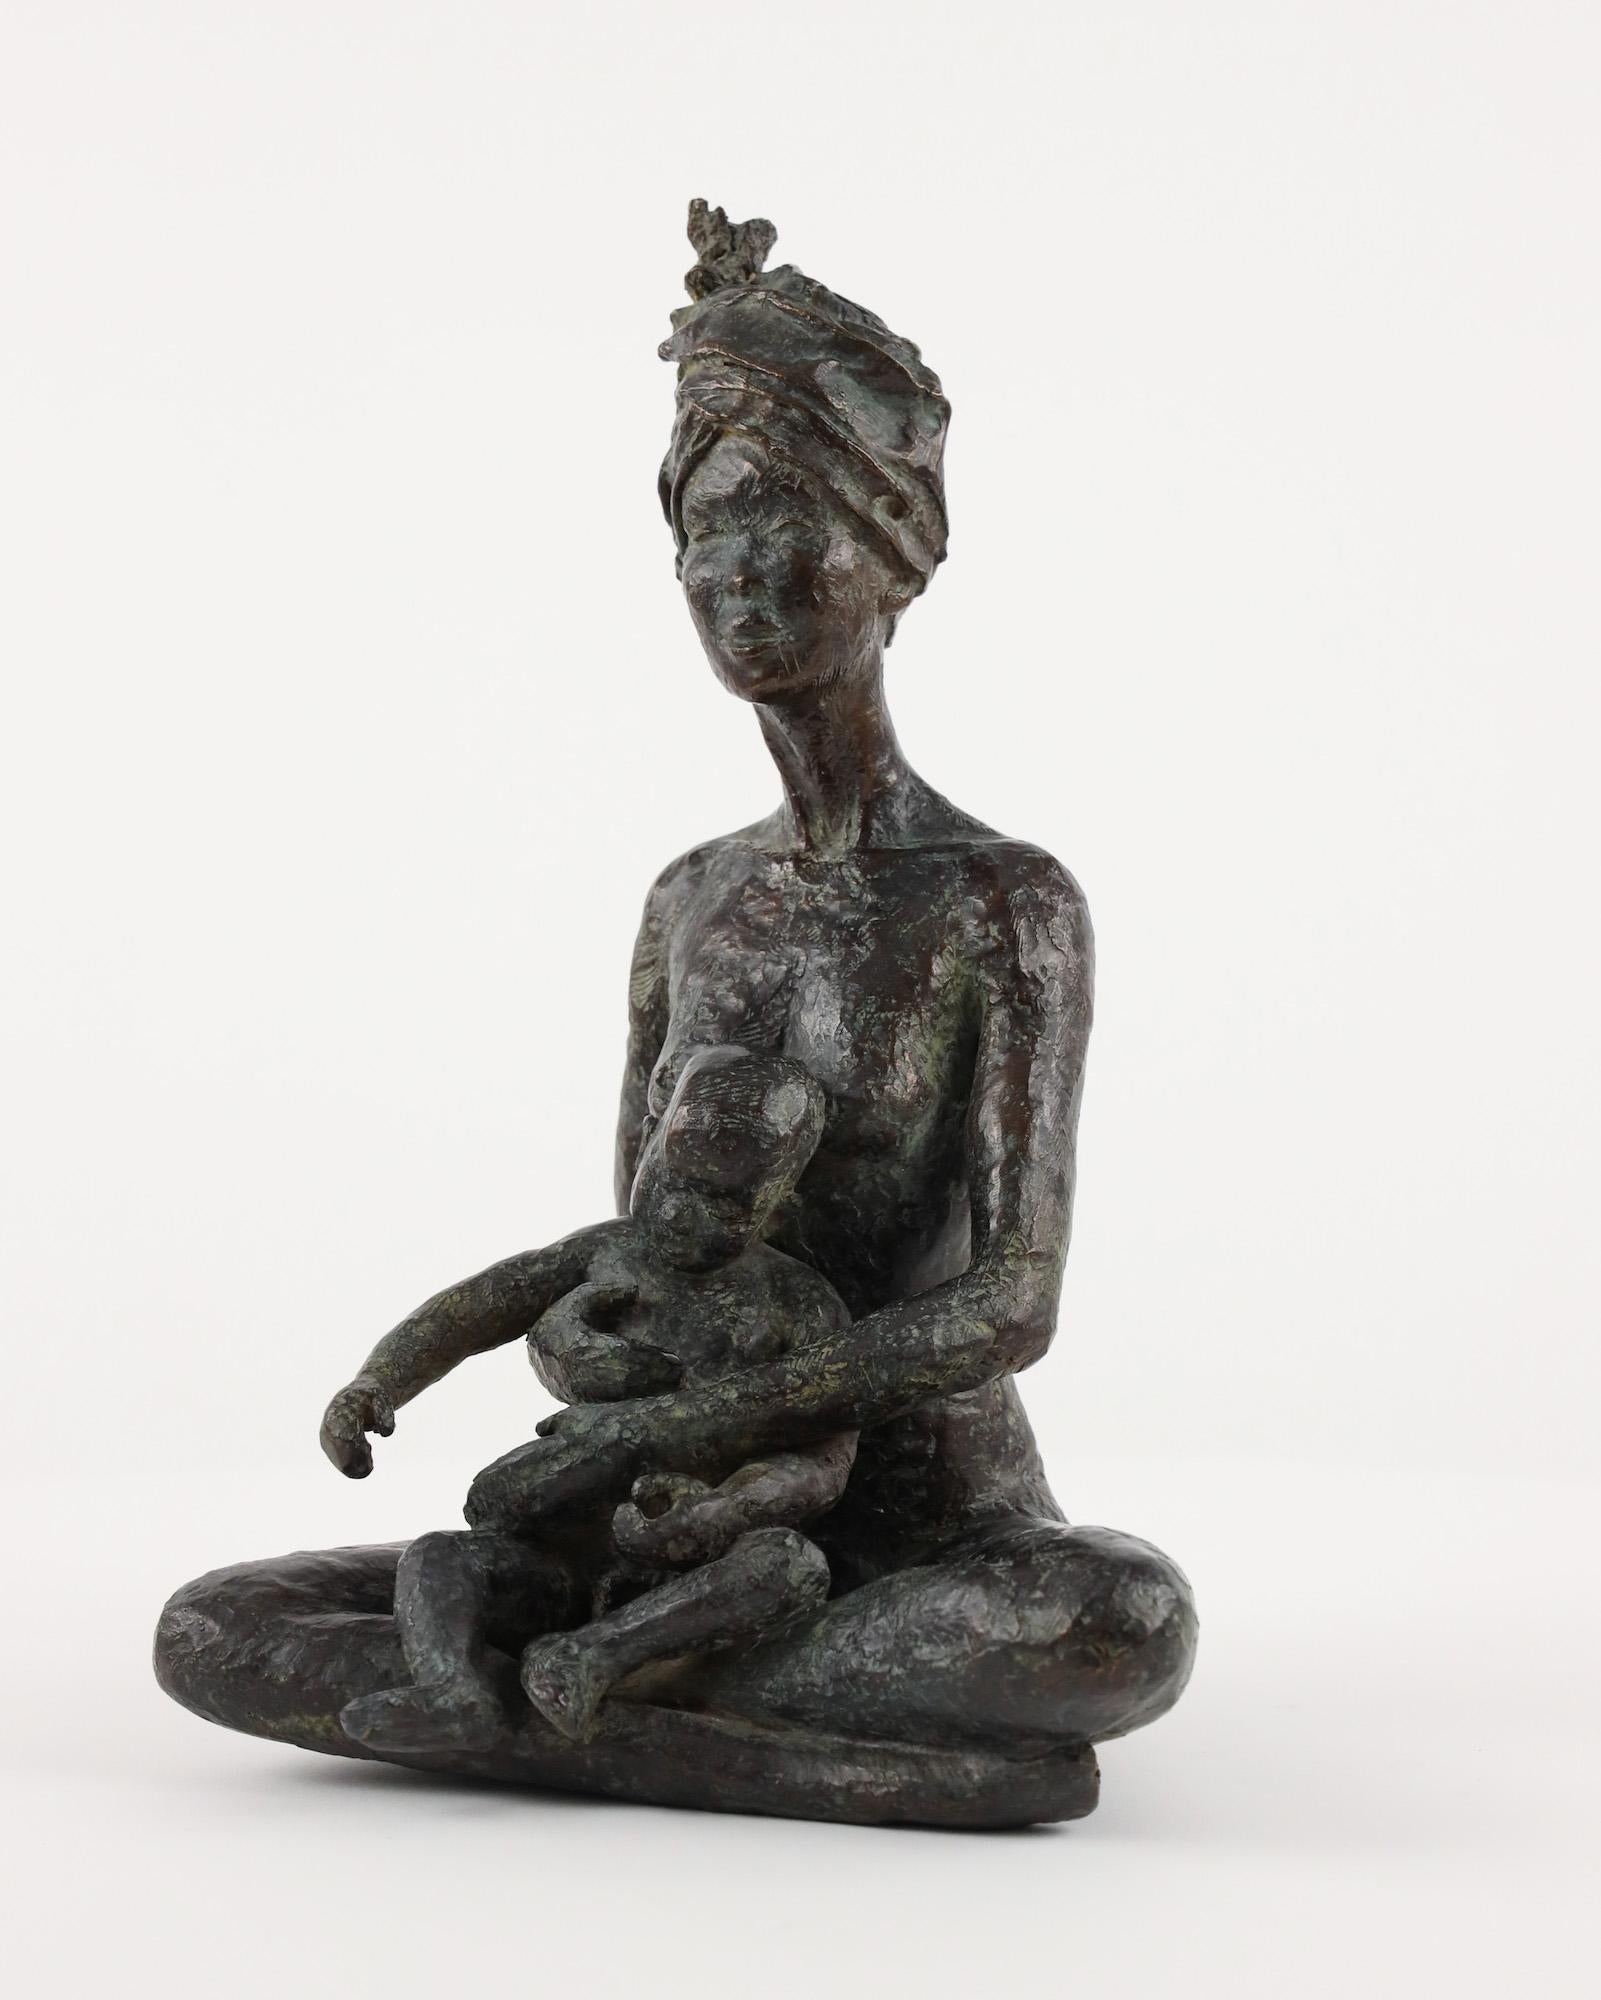 You too my son" ist eine Bronzeskulptur der französischen Künstlerin Marine de Soos mit den Maßen 32 × 21 × 19 cm (12,6 × 8,3 × 7,5 in). 
Die Skulptur ist signiert und nummeriert, gehört zu einer limitierten Auflage von 8 Exemplaren + 4